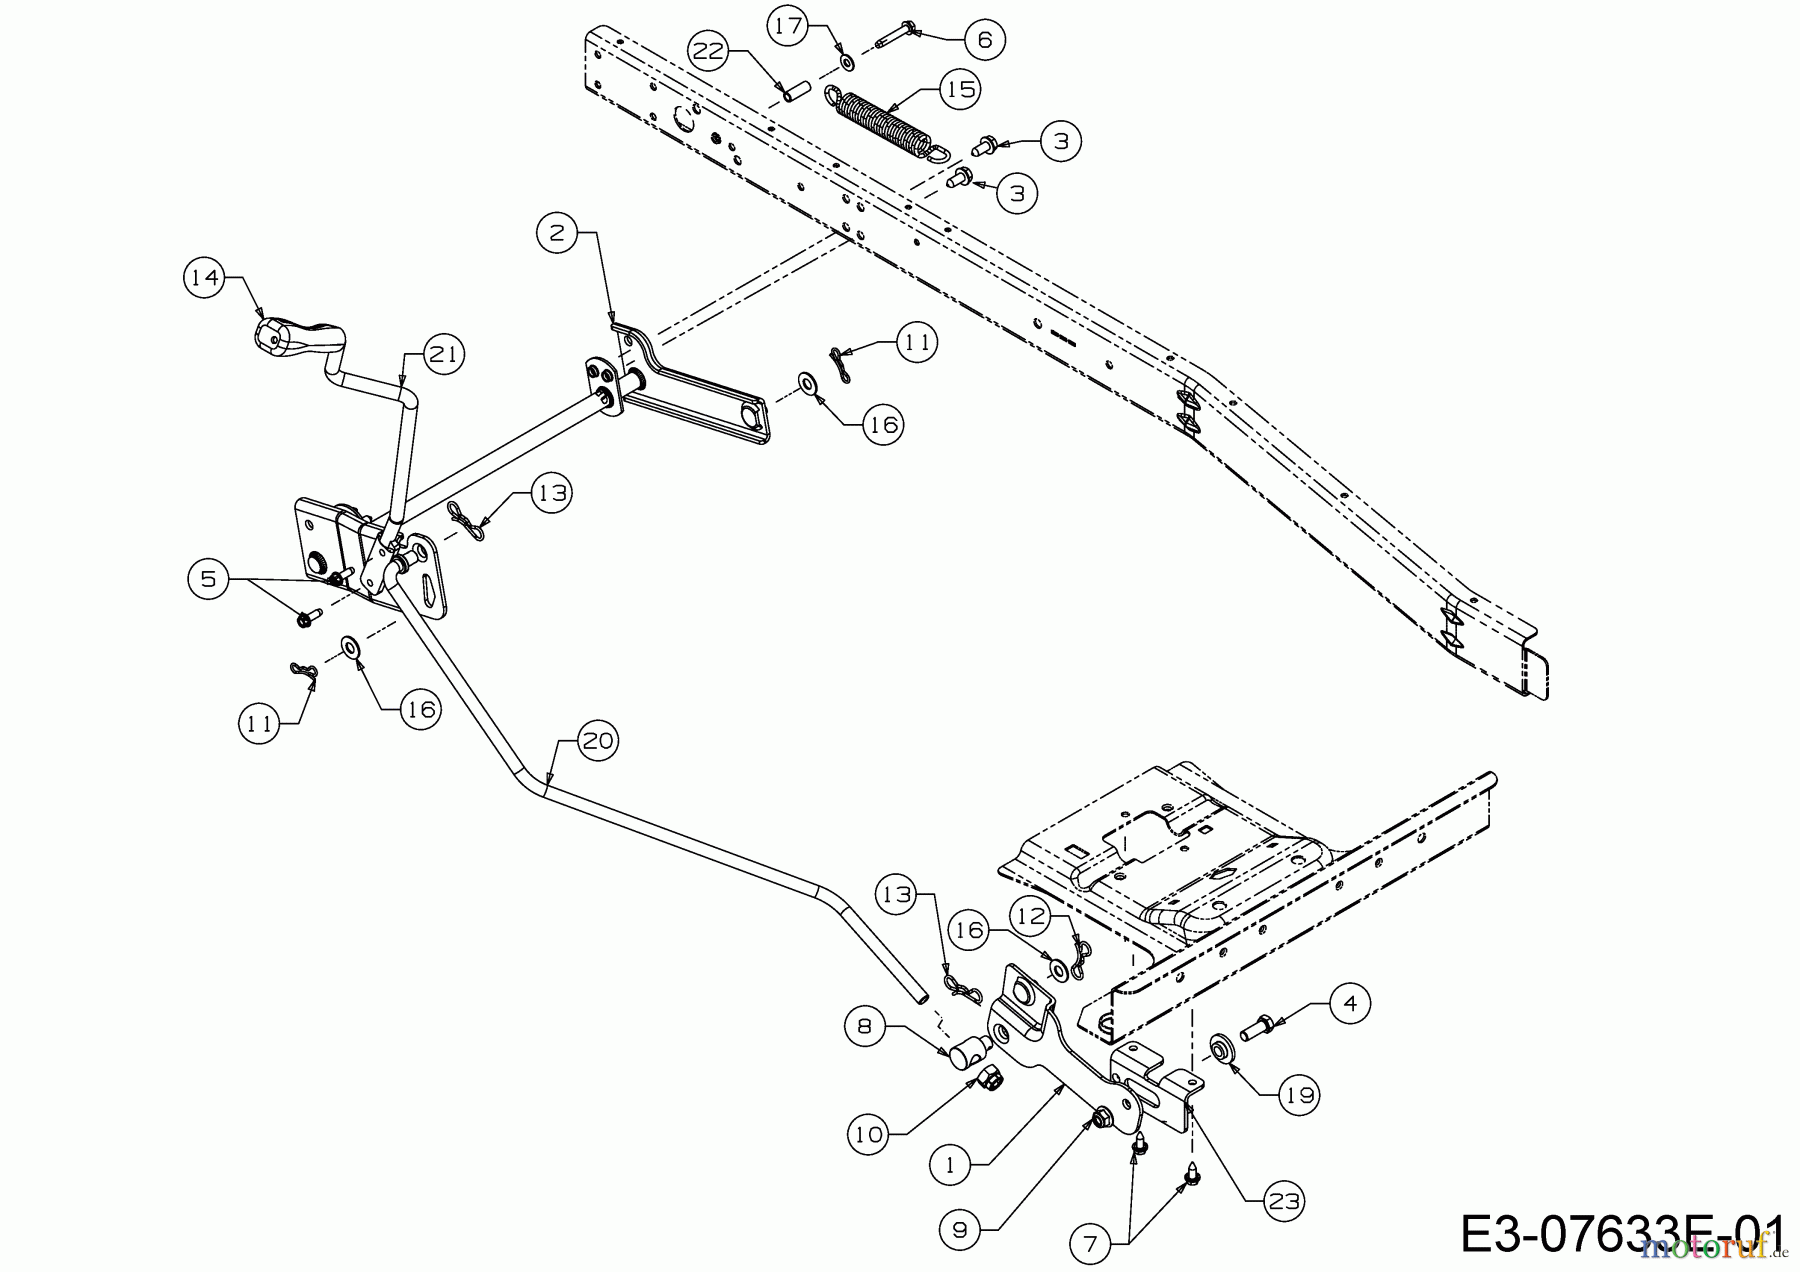  WOLF-Garten Expert Rasentraktoren Scooter Pro 13B226HD650  (2016) Mähwerksaushebung